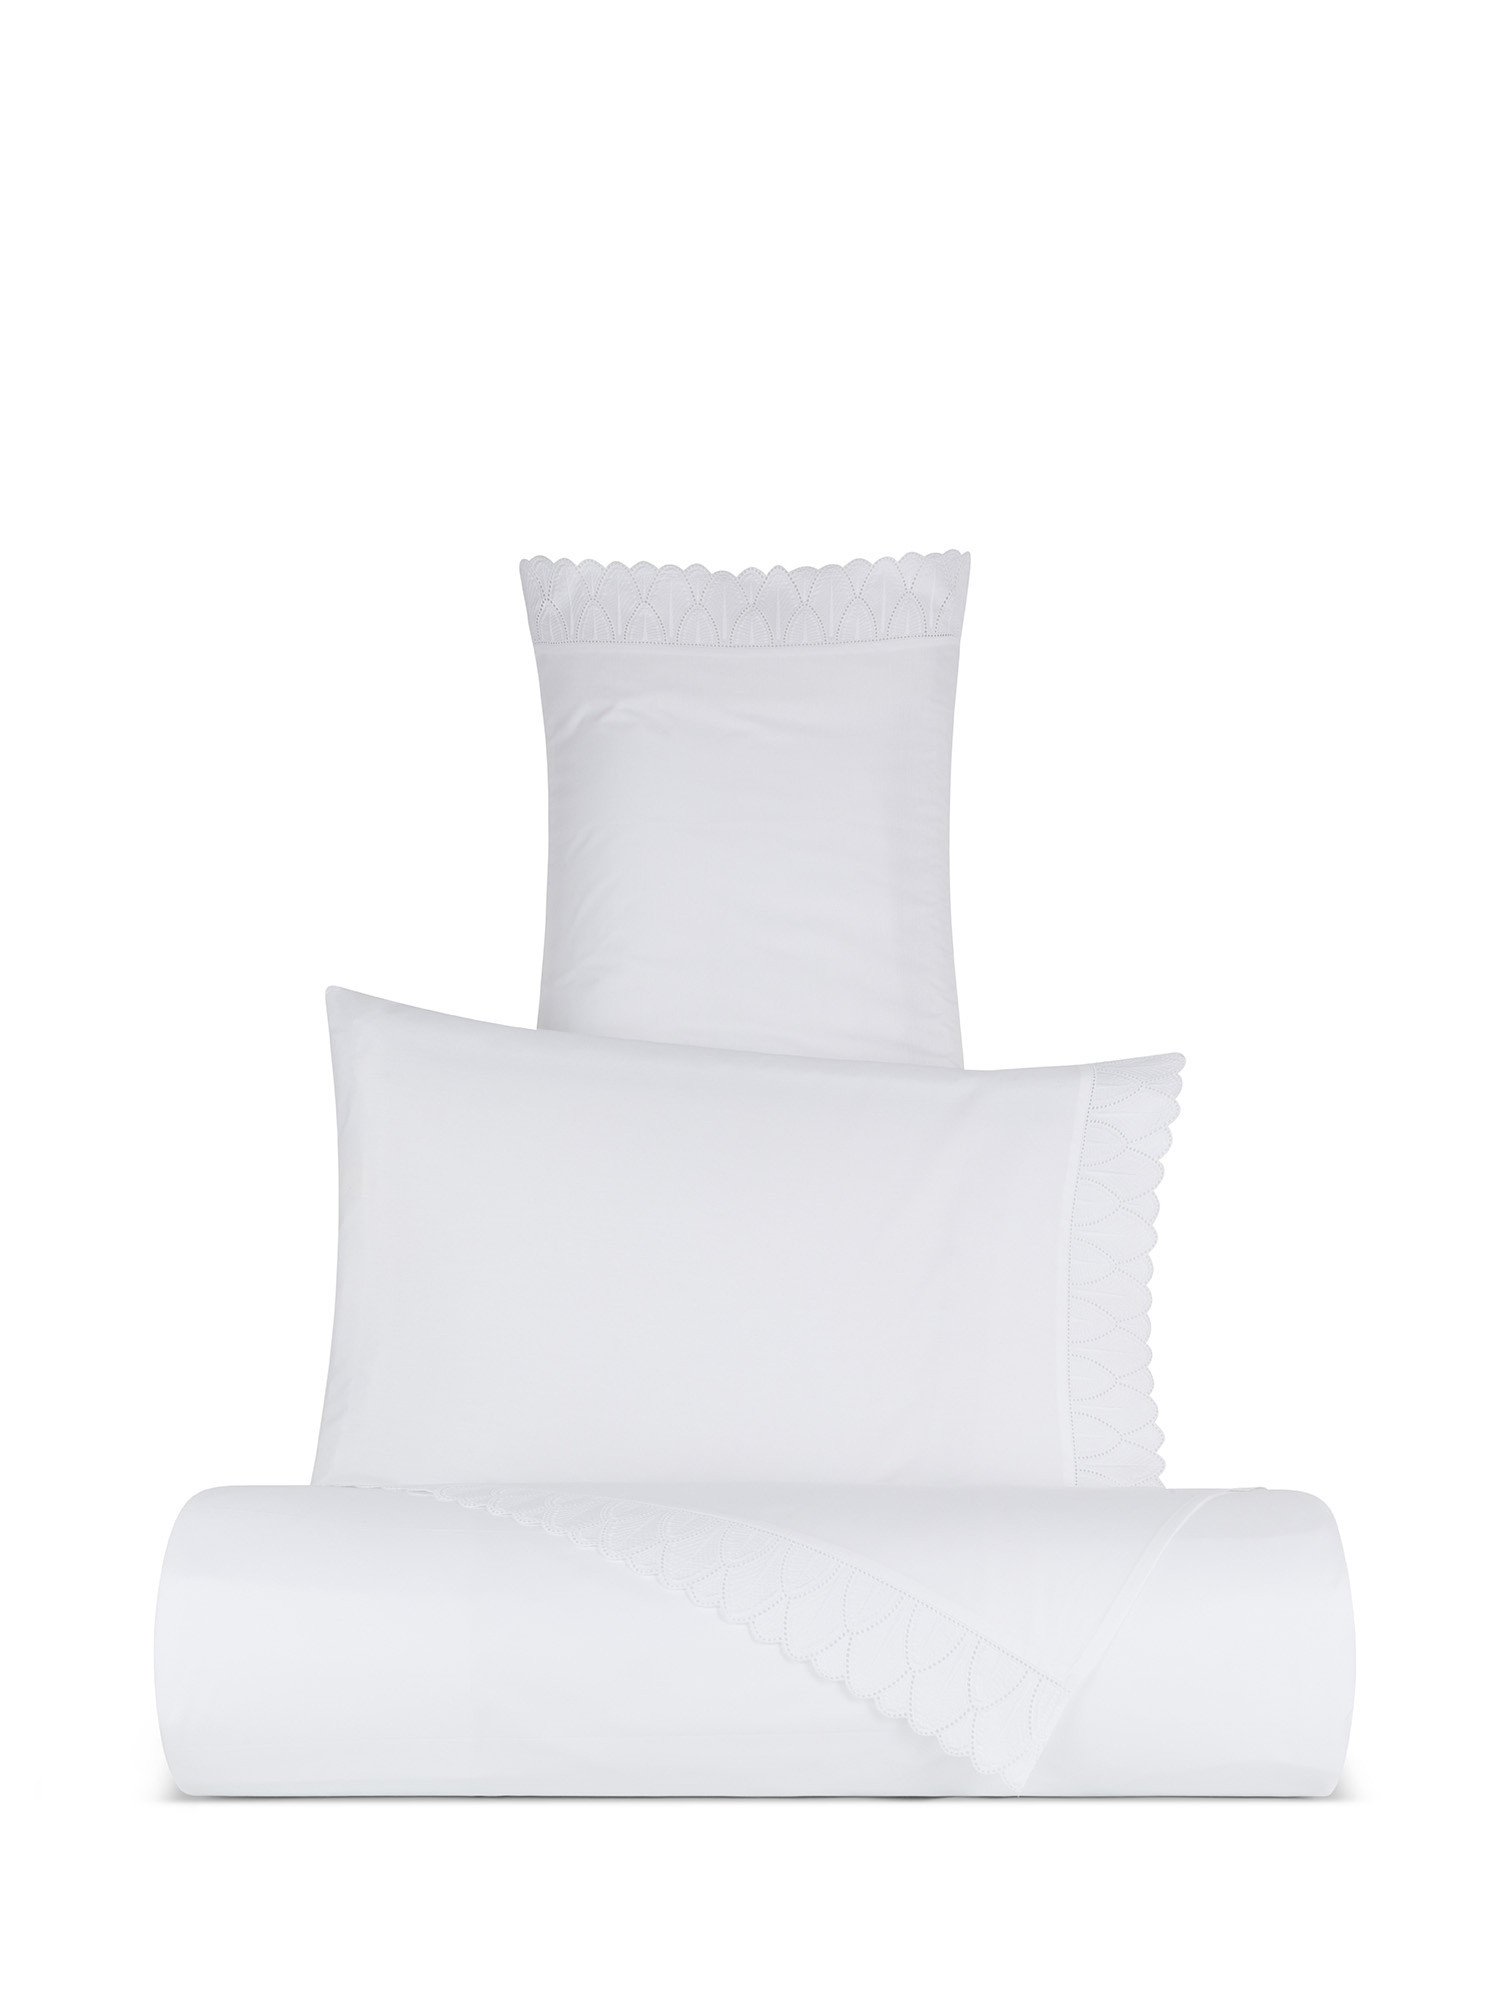 Pillowcase in fine cotton percale Portofino, White, large image number 2